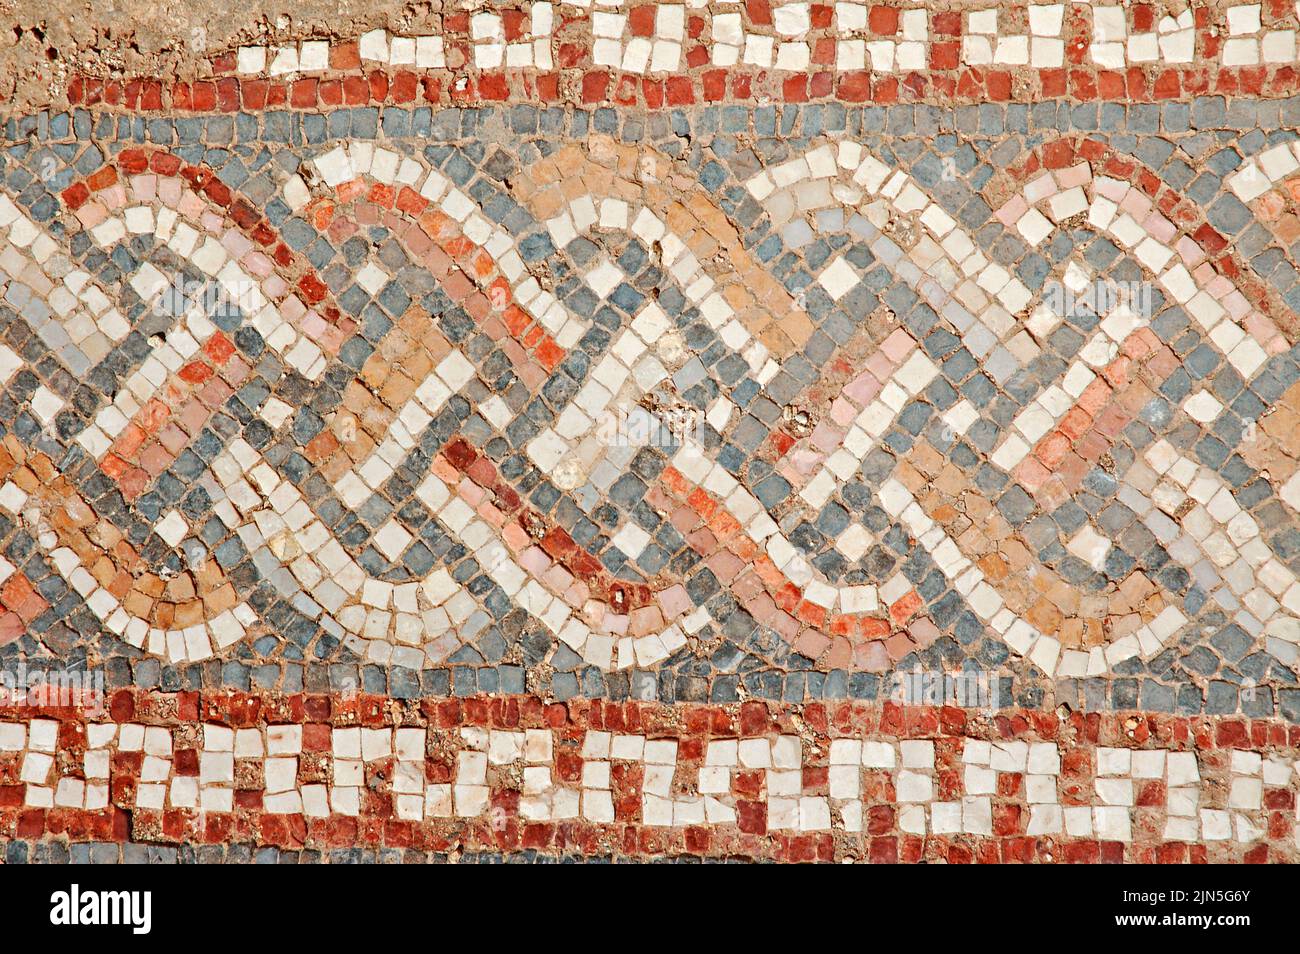 Jordania, sitio arqueológico de Jerash, mosaico Foto de stock